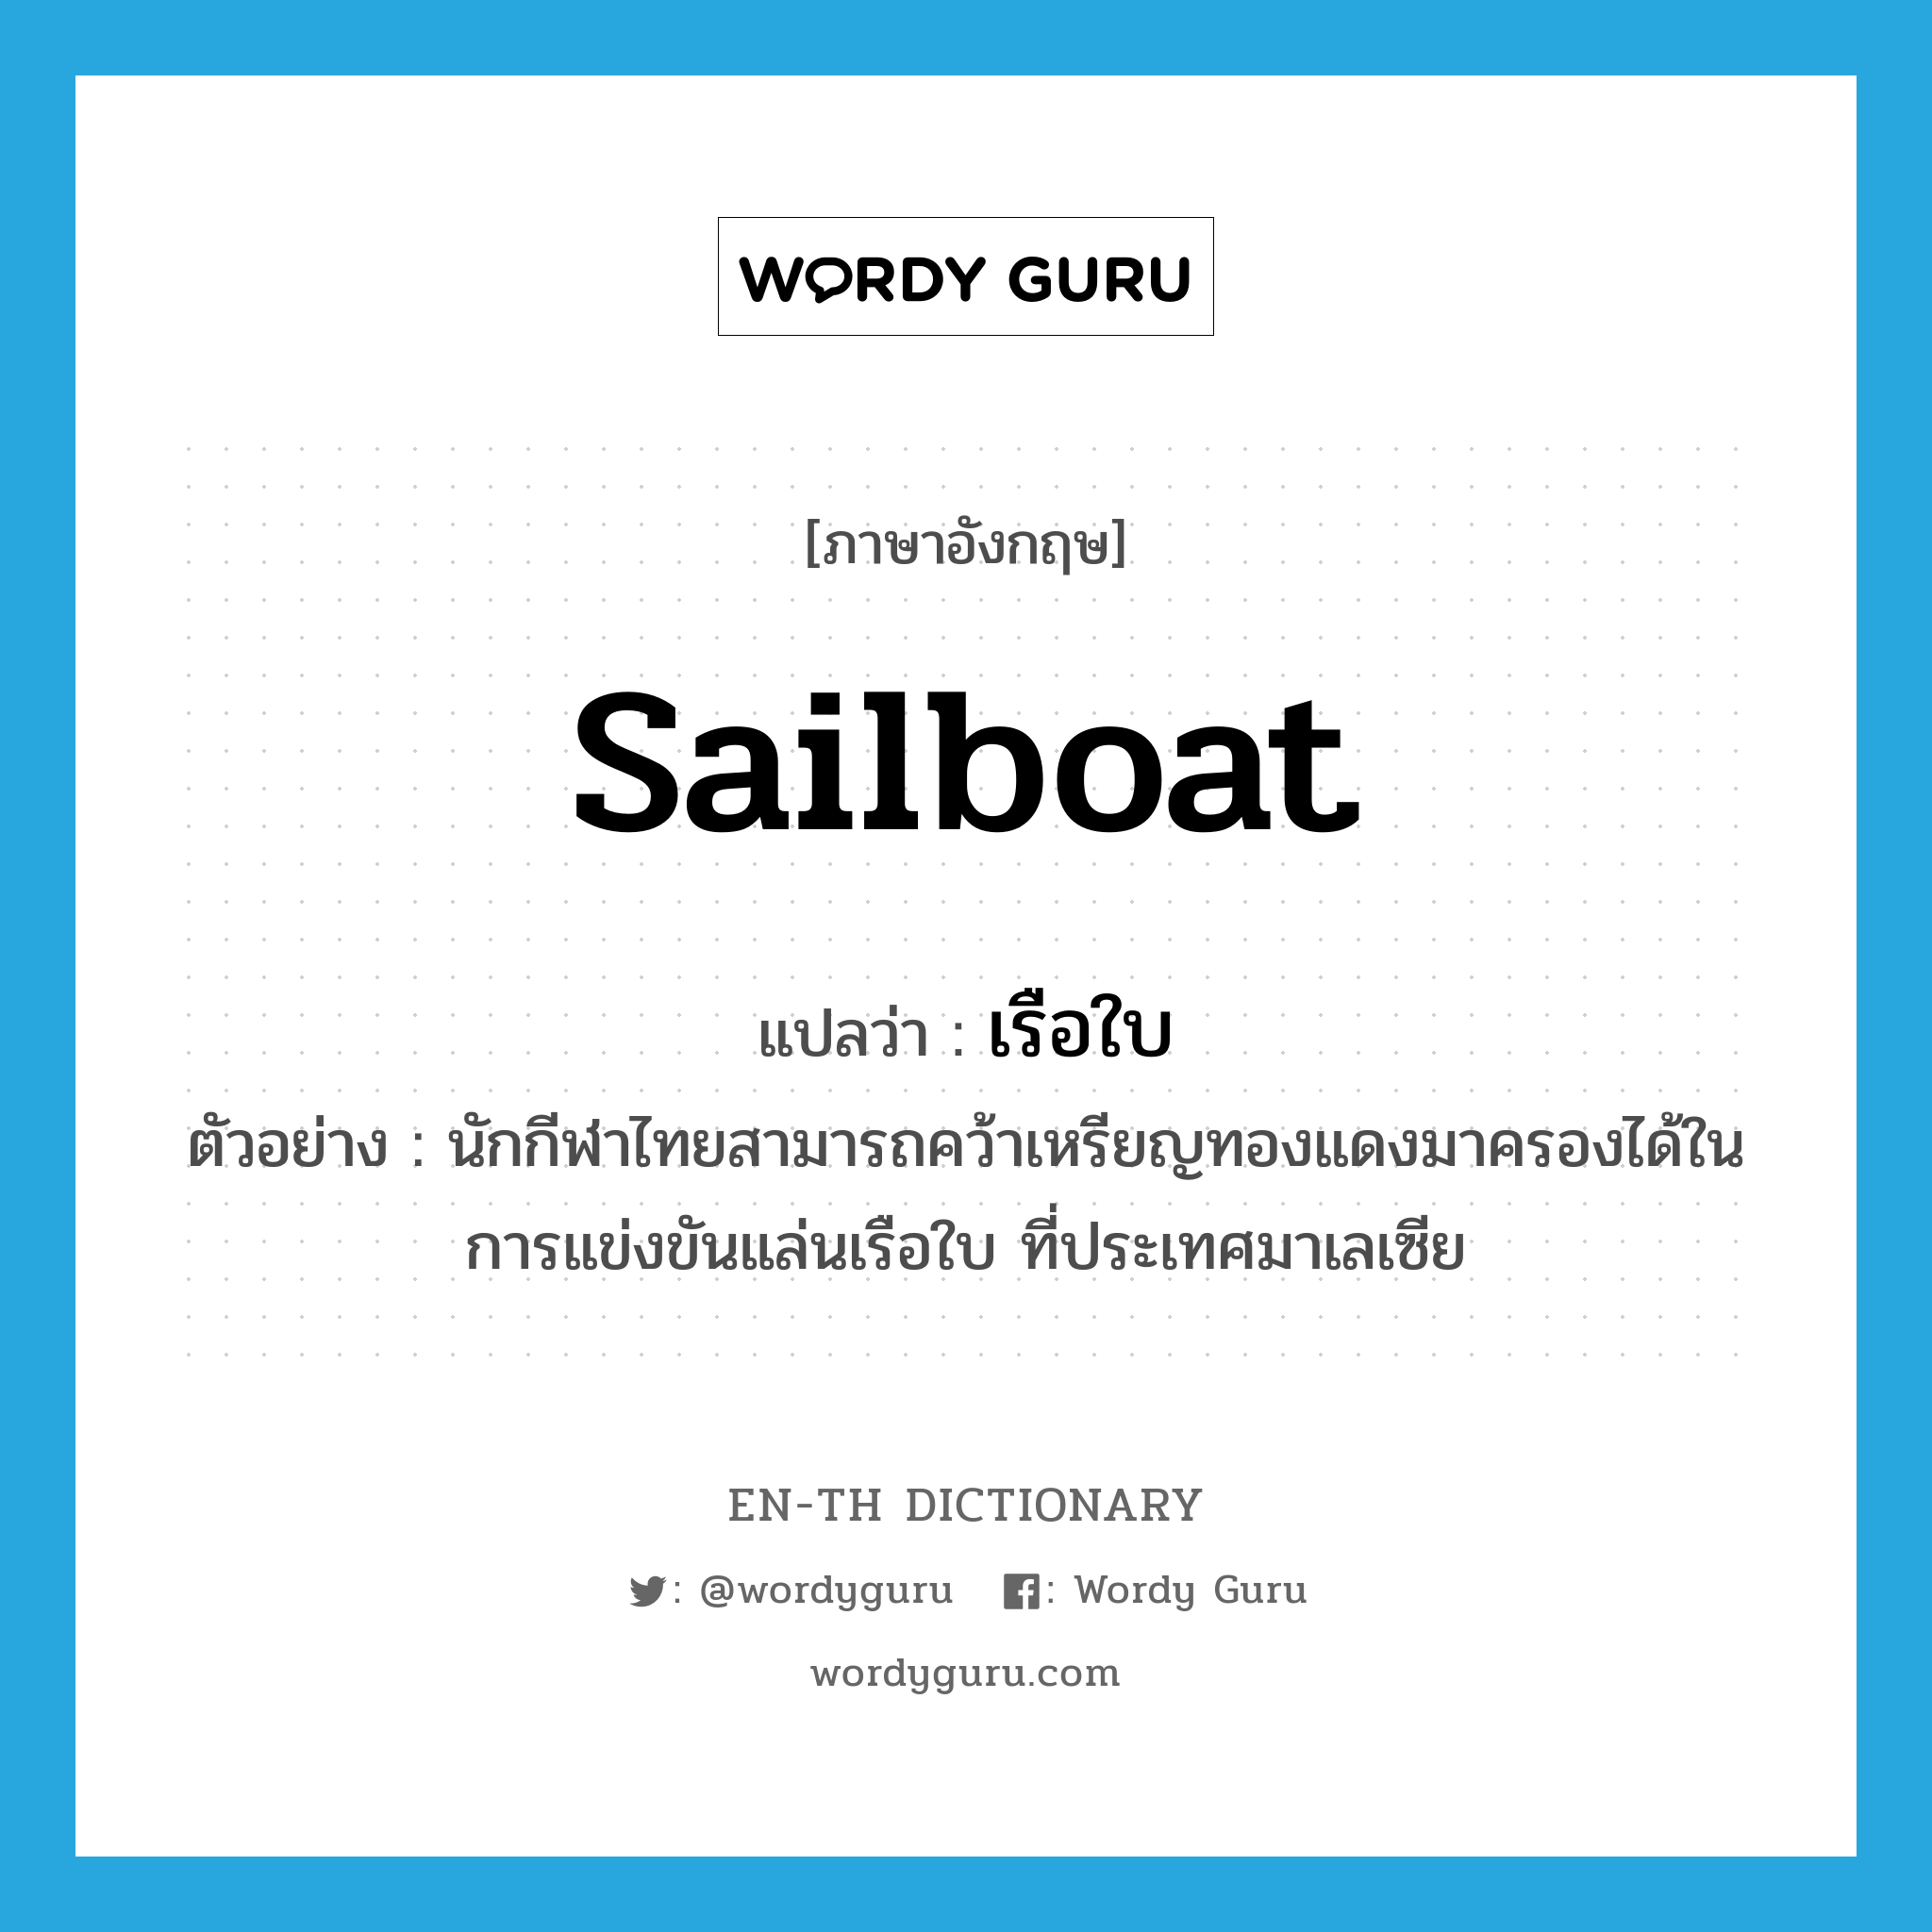 เรือใบ ภาษาอังกฤษ?, คำศัพท์ภาษาอังกฤษ เรือใบ แปลว่า sailboat ประเภท N ตัวอย่าง นักกีฬาไทยสามารถคว้าเหรียญทองแดงมาครองได้ในการแข่งขันแล่นเรือใบ ที่ประเทศมาเลเซีย หมวด N